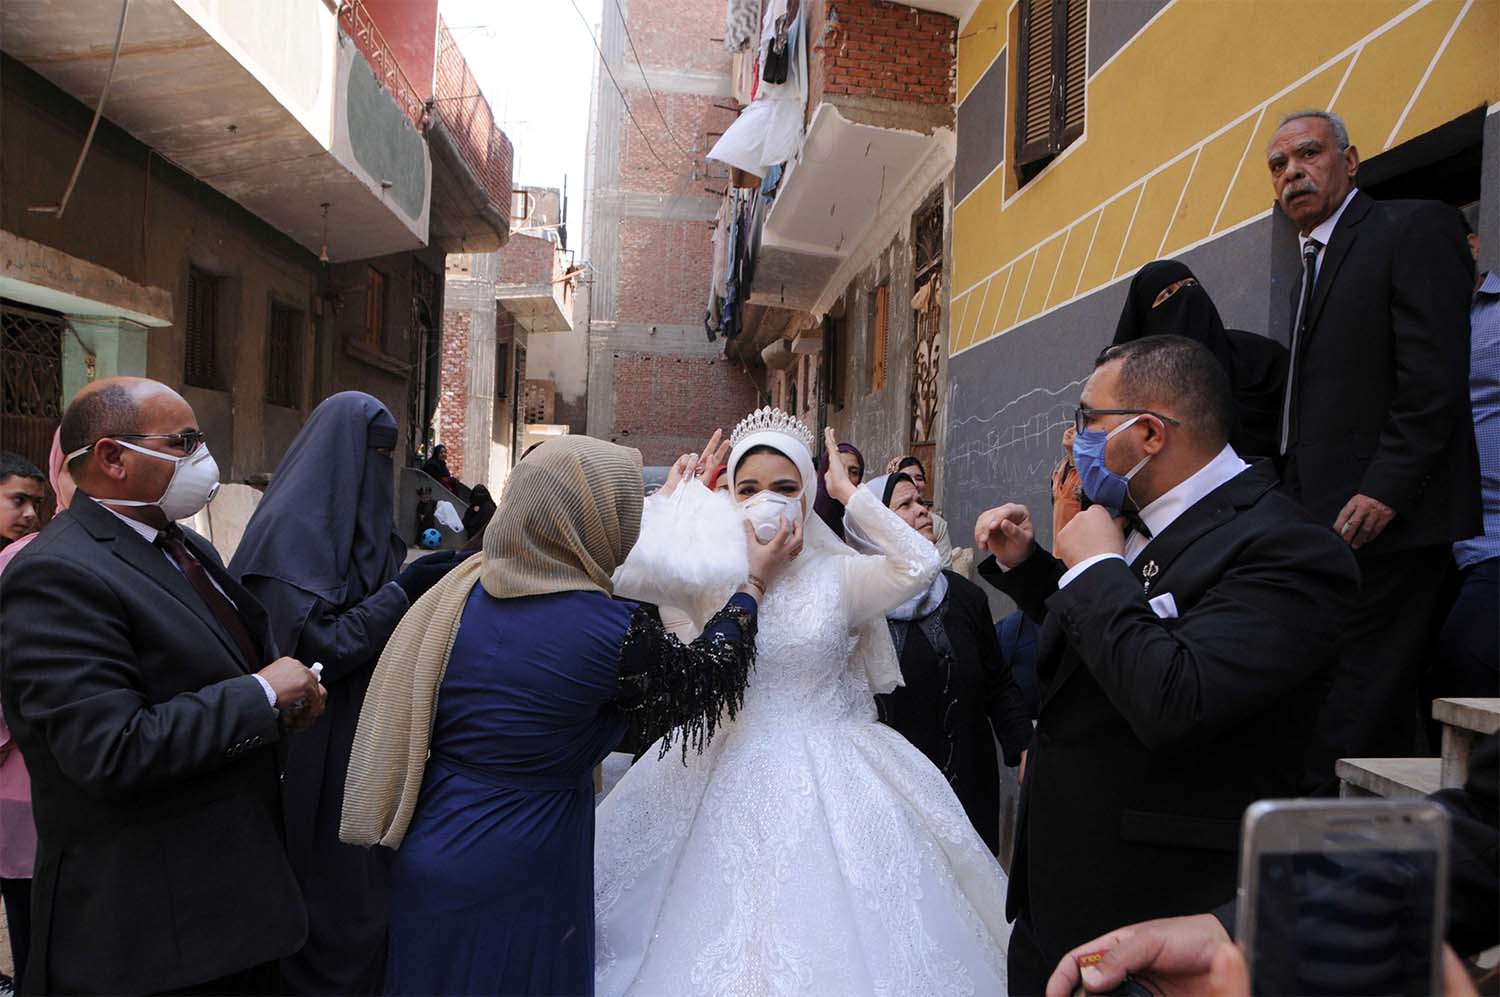 A maximum of 300 invitees in open-air wedding ceremonies